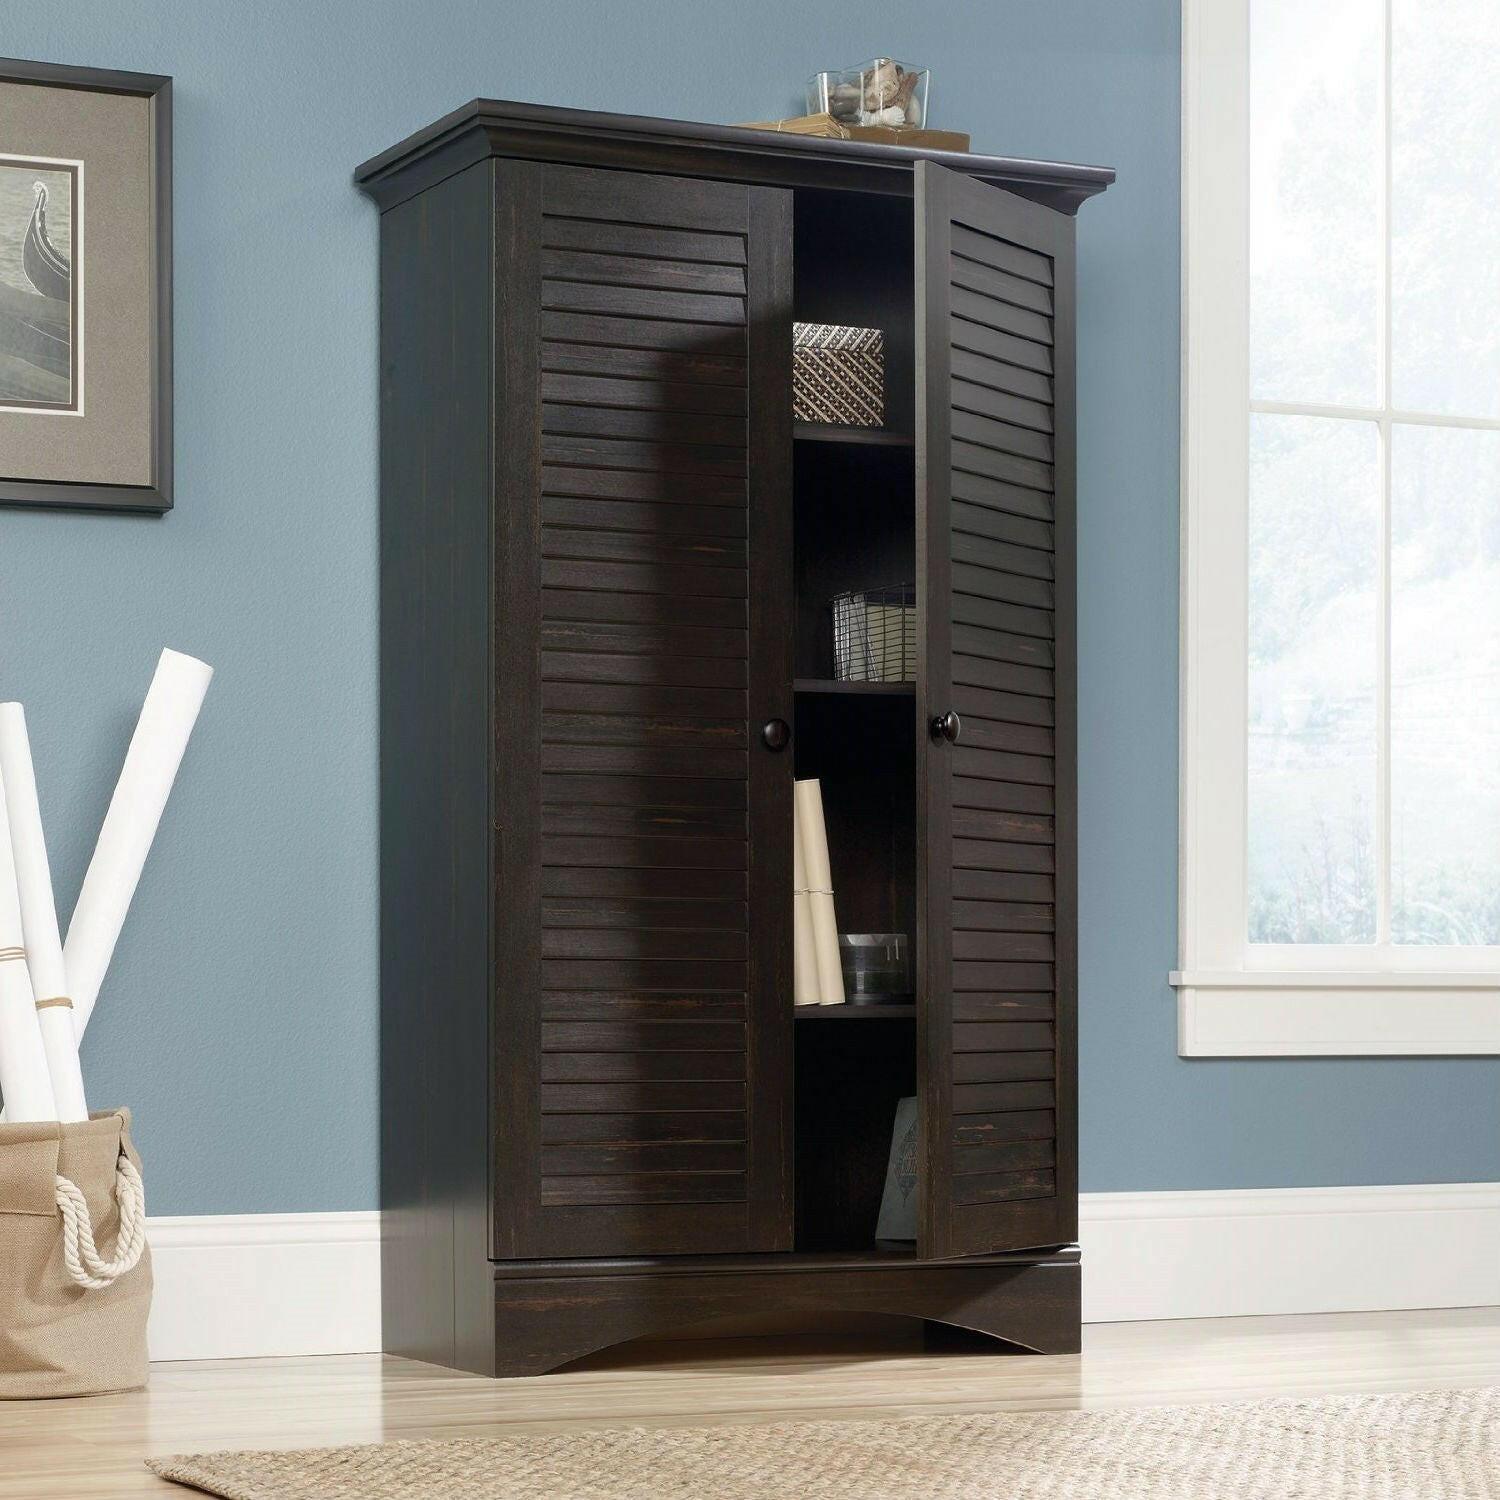 Multi-Purpose Wardrobe Armoire Storage Cabinet in Dark Brown Antique Wood Finish - FurniFindUSA